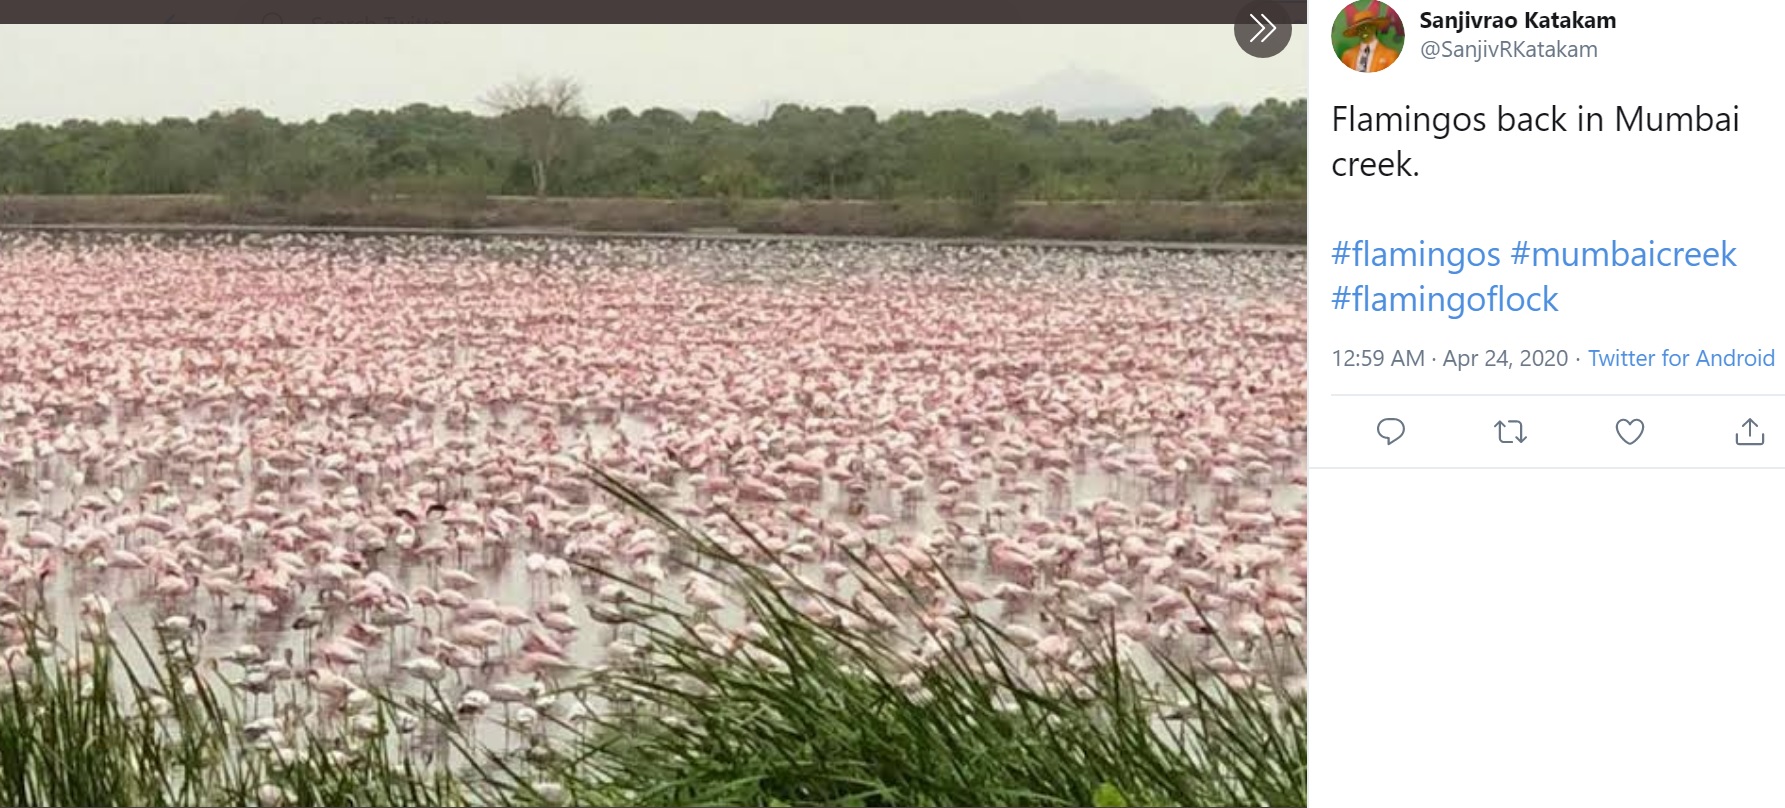 印マハーラーシュトラ州ムンバイの入り江には毎年10月から3月にかけて多数のフラミンゴがやってくるが、2020年には飛来数が急増。一帯をピンクに染めていた（画像は『Sanjivrao Katakam　2020年4月23日付X「Flamingos back in Mumbai creek.」』のスクリーンショット）